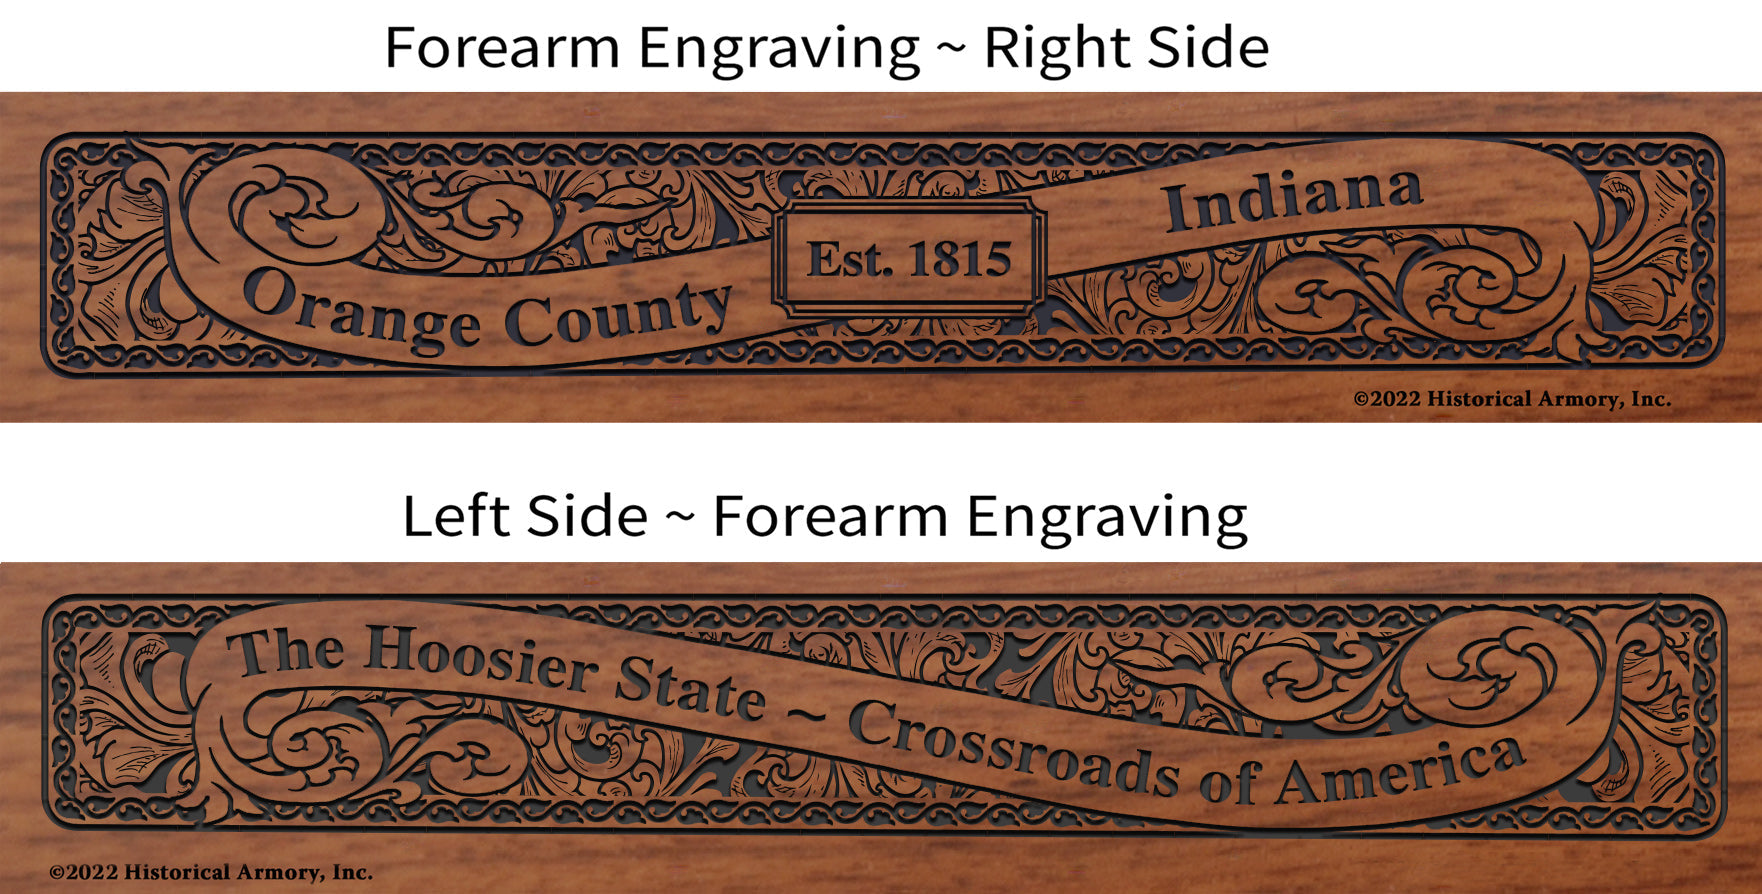 Orange County Indiana Engraved Rifle Forearm